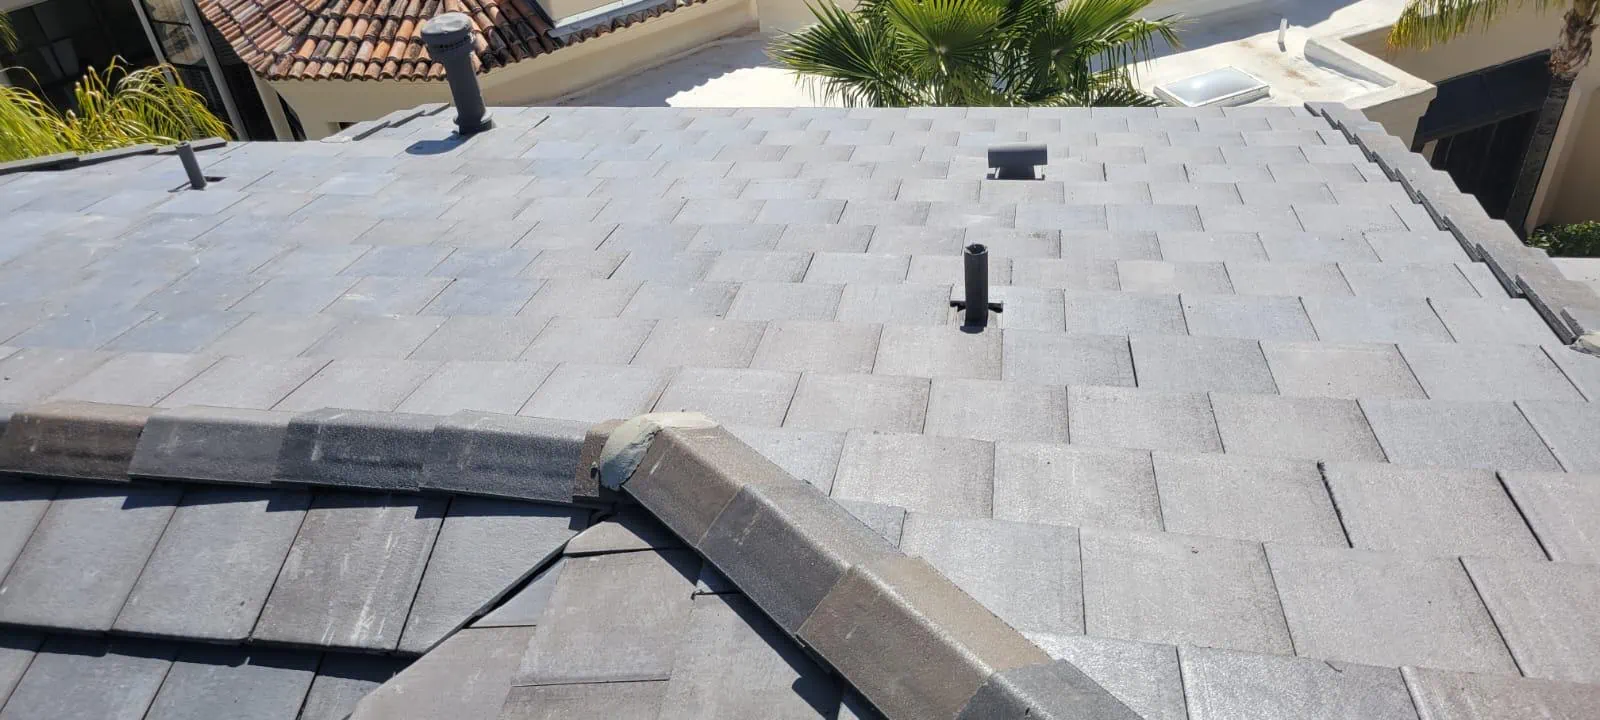 concrete tile roof maintenance in phoenix